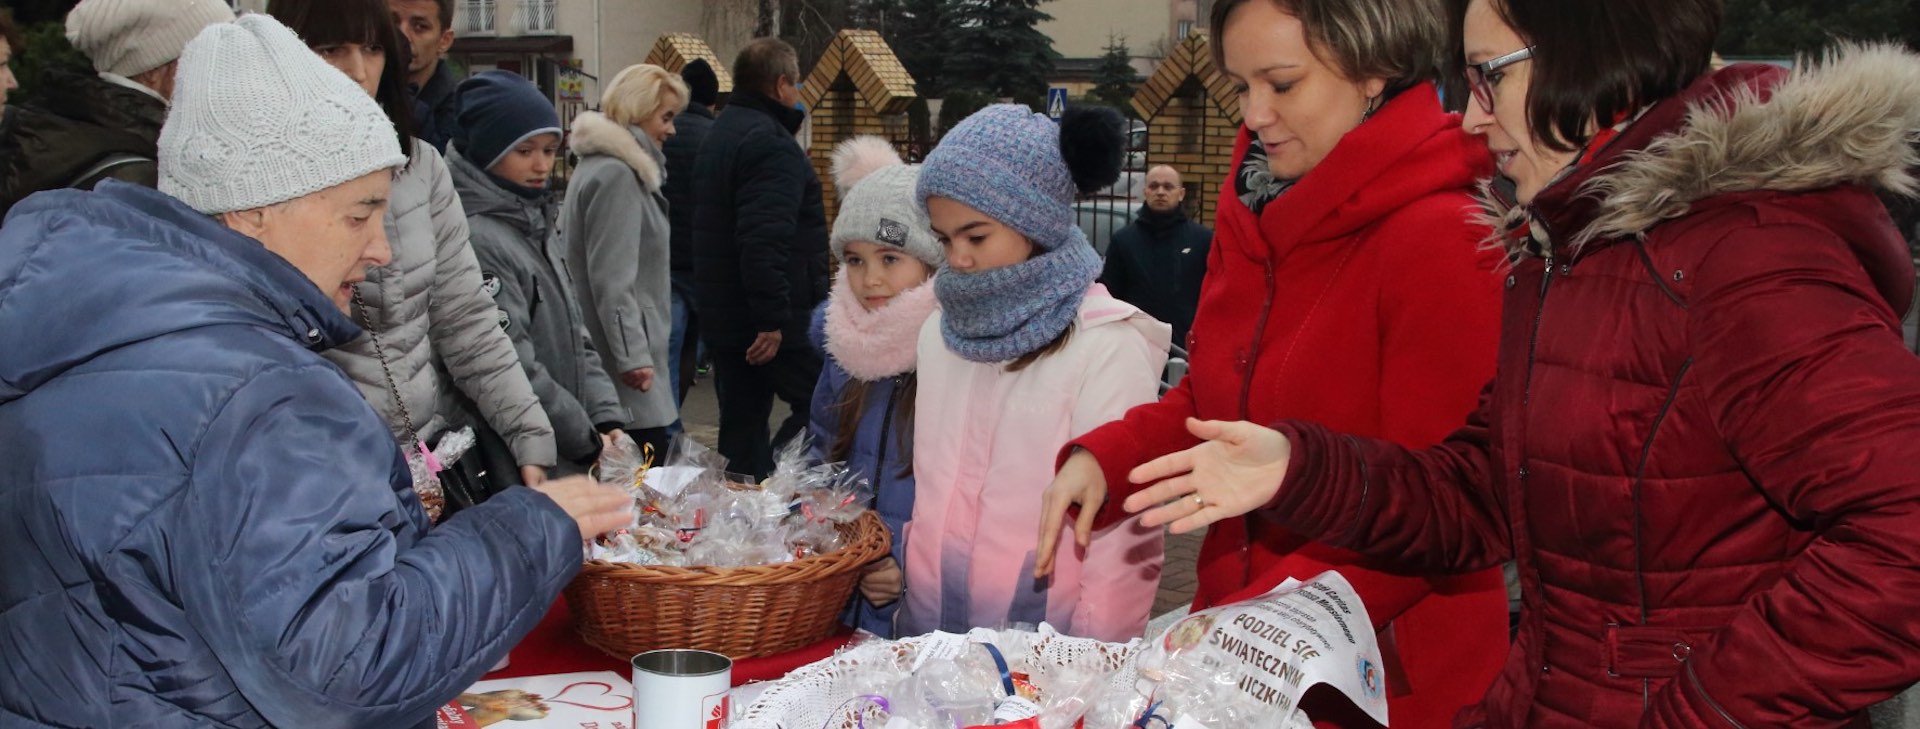 Akcja "Podziel się świątecznym pierniczkiem" w 2019 roku (FOTORELACJA)